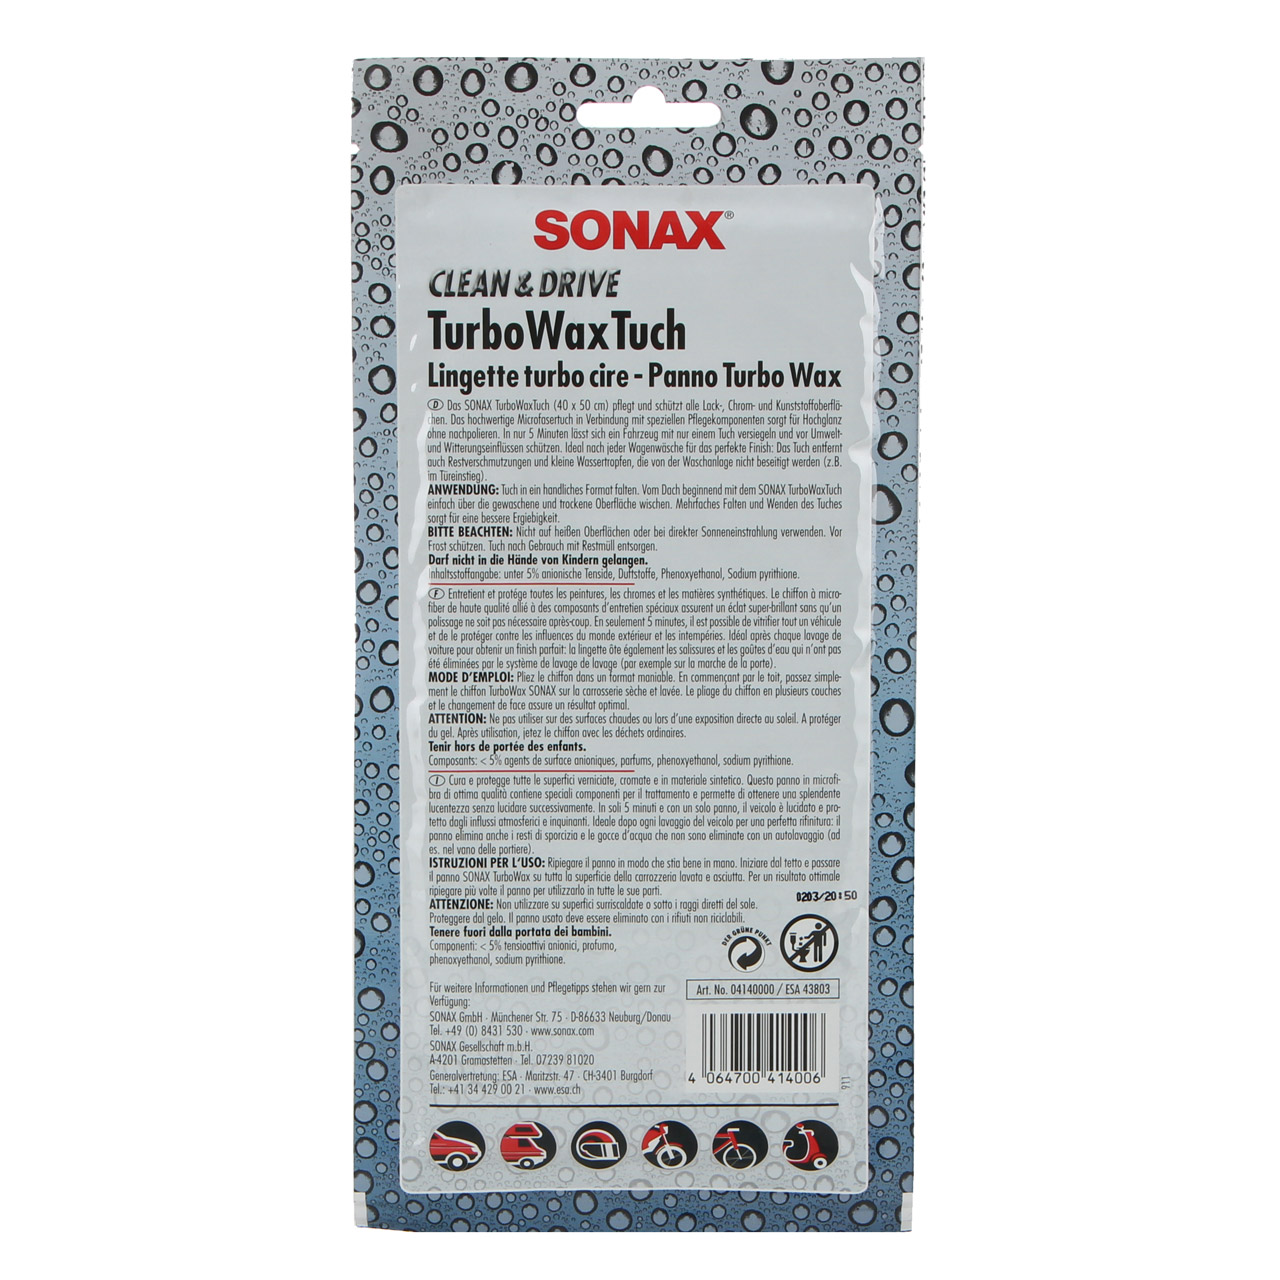 SONAX 414000 TurboWaxTuch CLEAN & DRIVE Wachstuch Microfaser Tuch 40x50cm